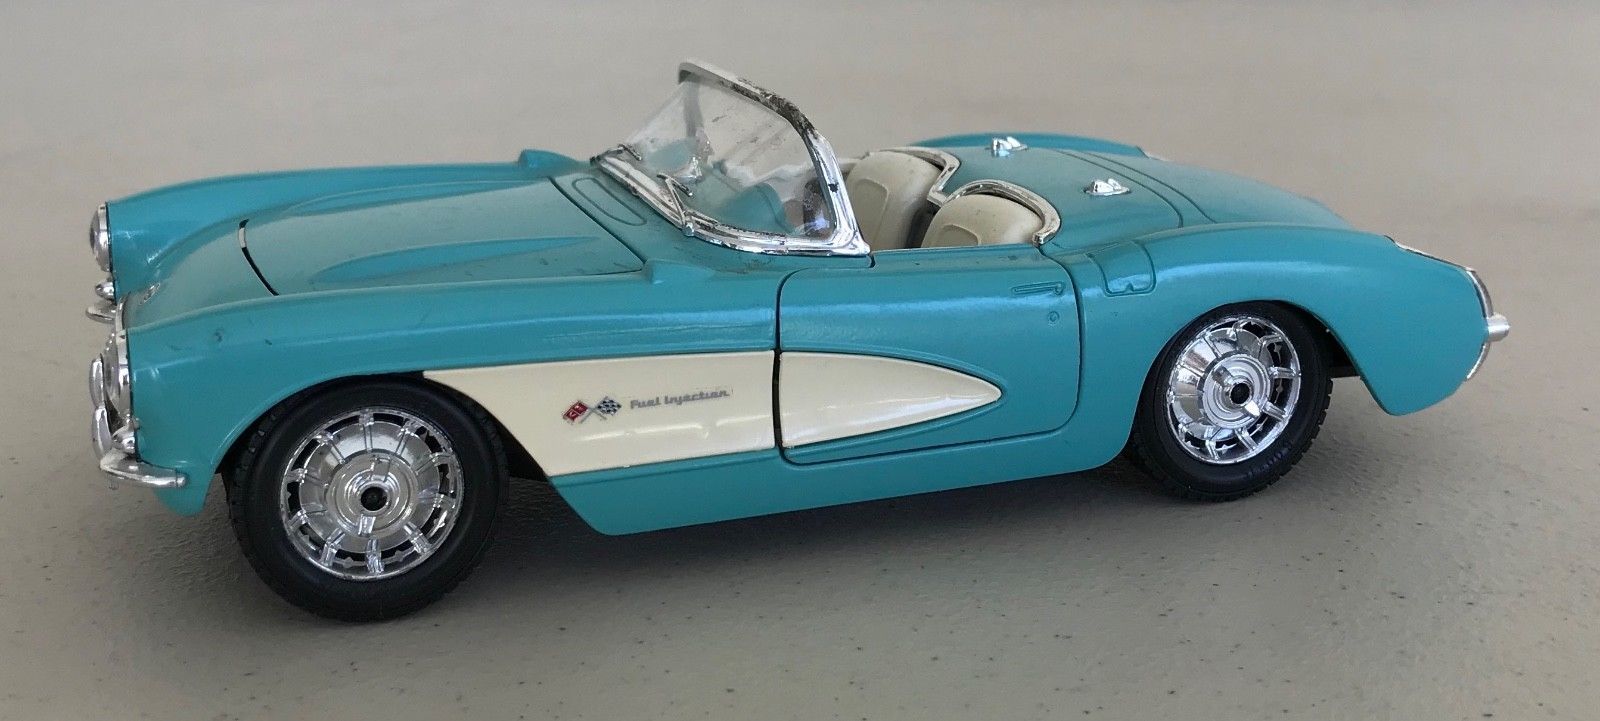 1957 corvette diecast model